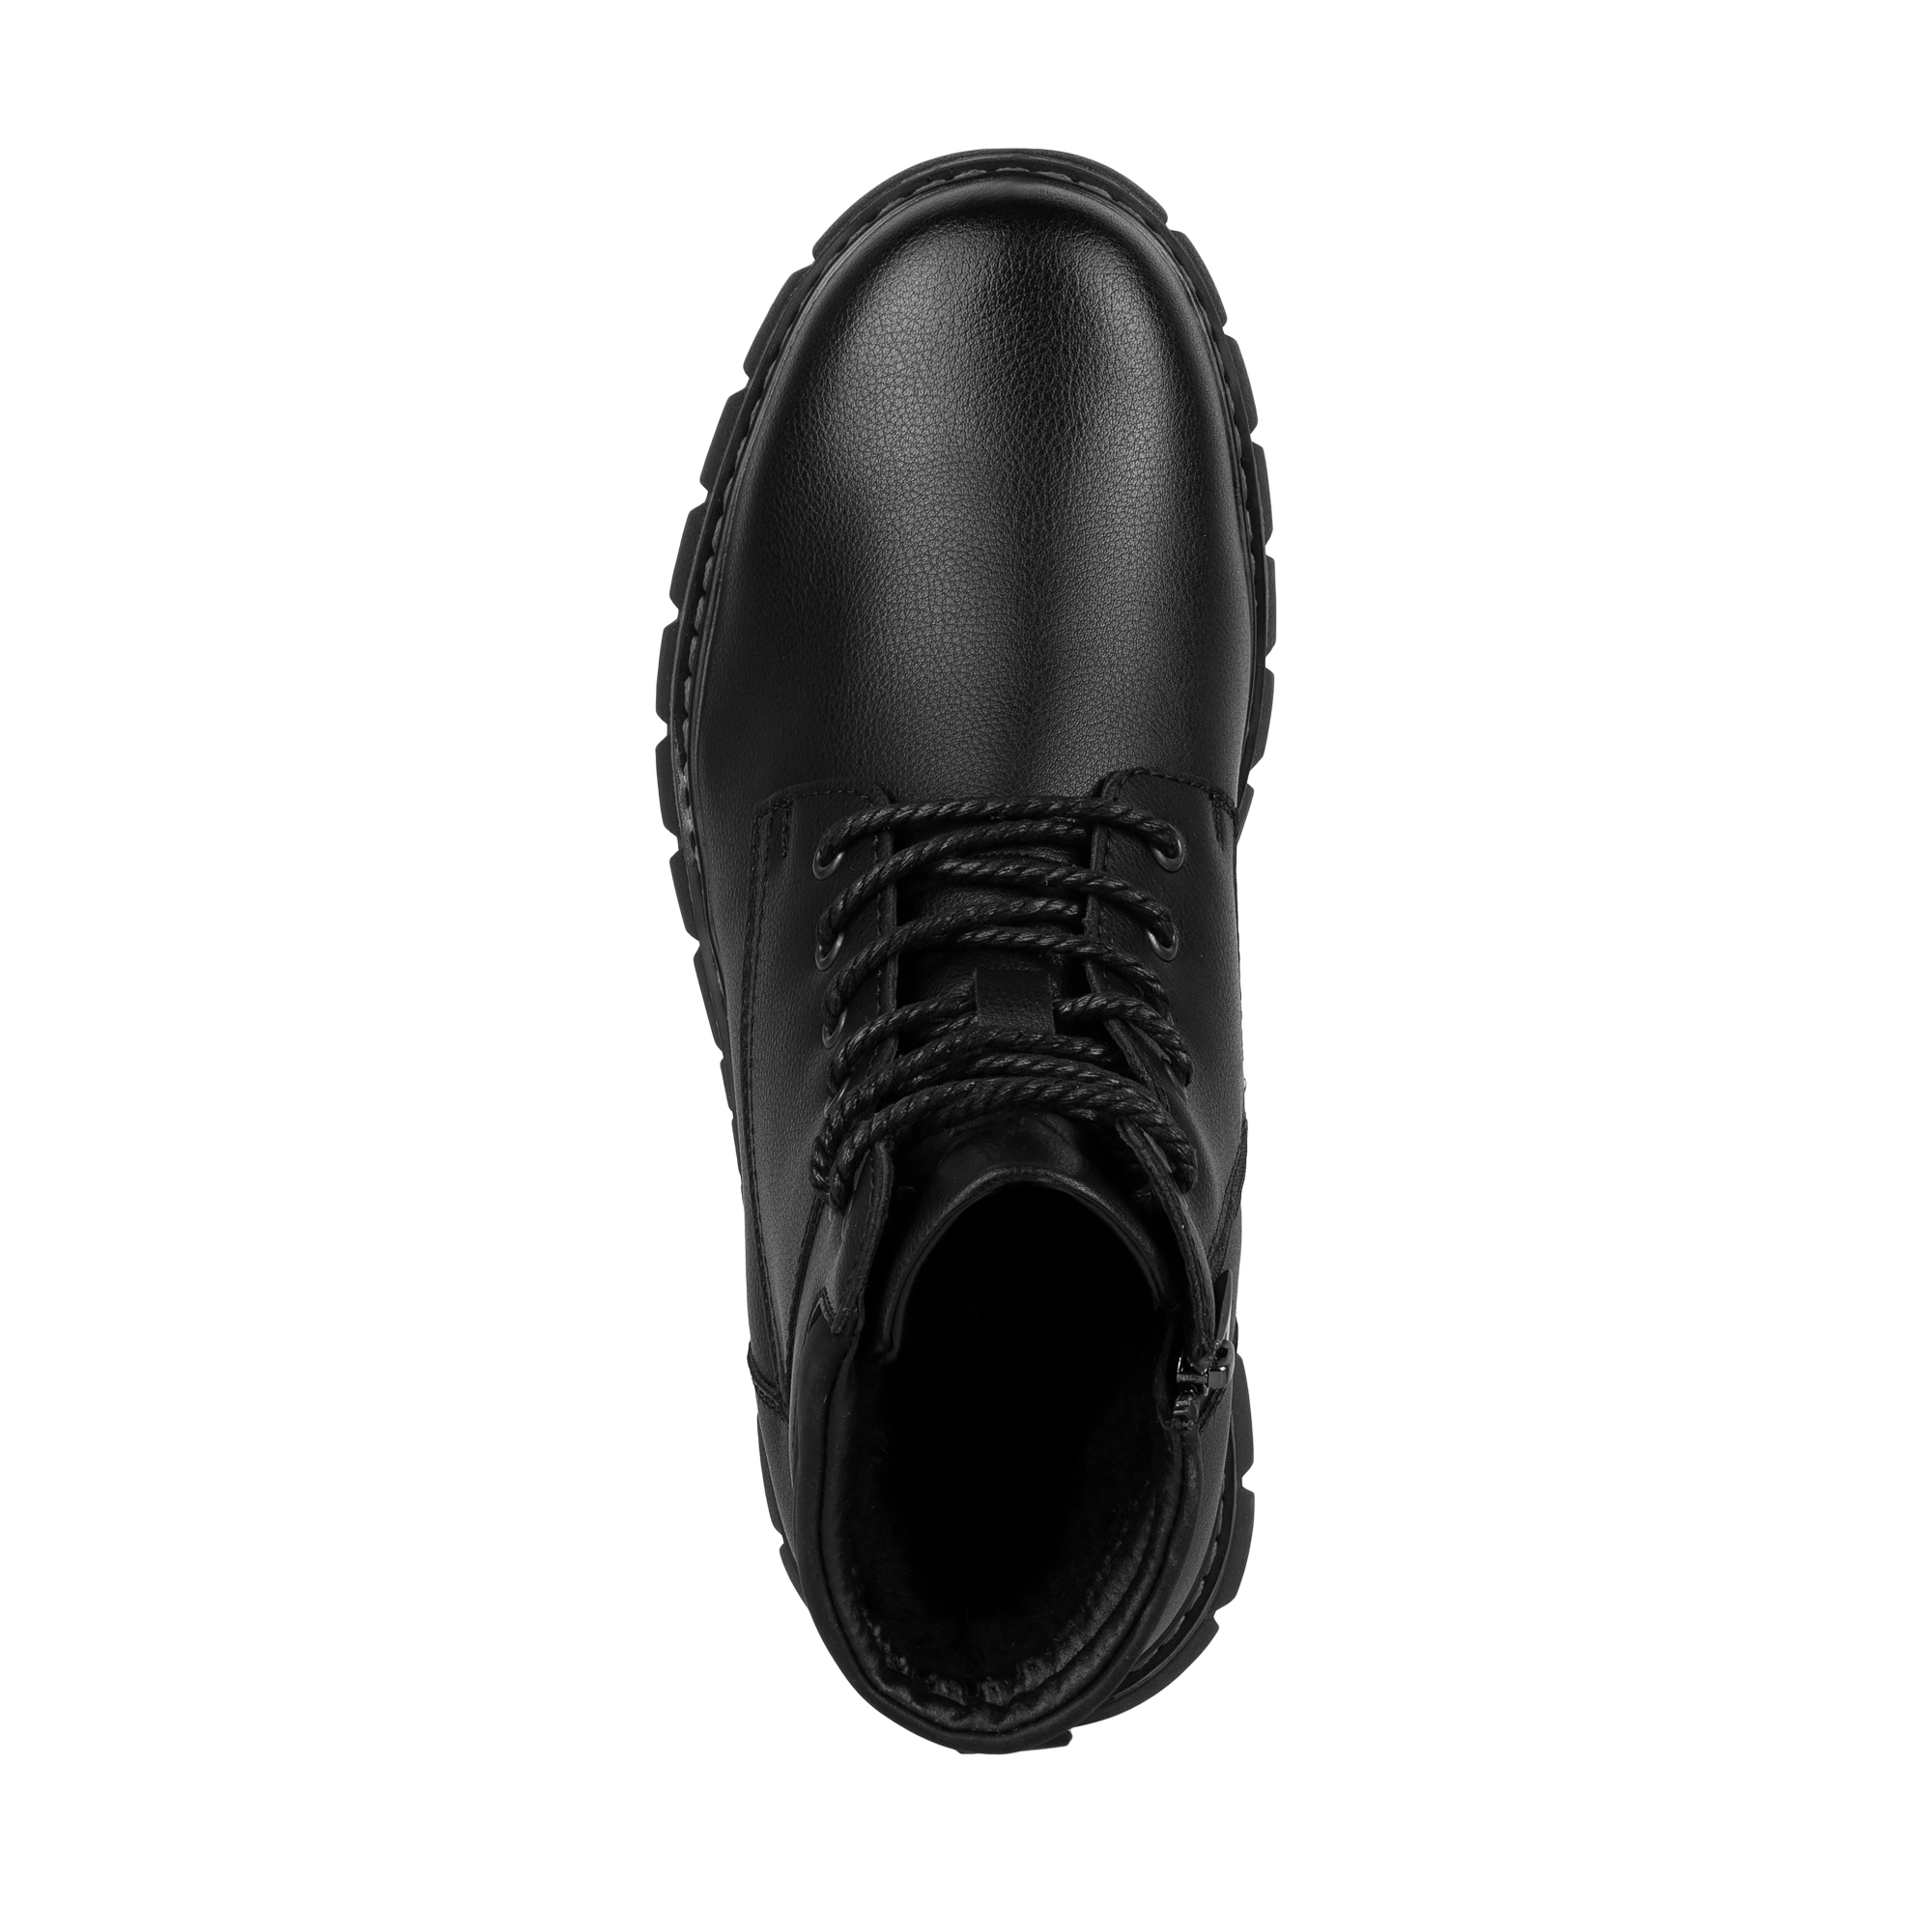 Обувь для мальчиков MUNZ YOUNG 116-429A-5602, цвет черный, размер 37 - фото 5